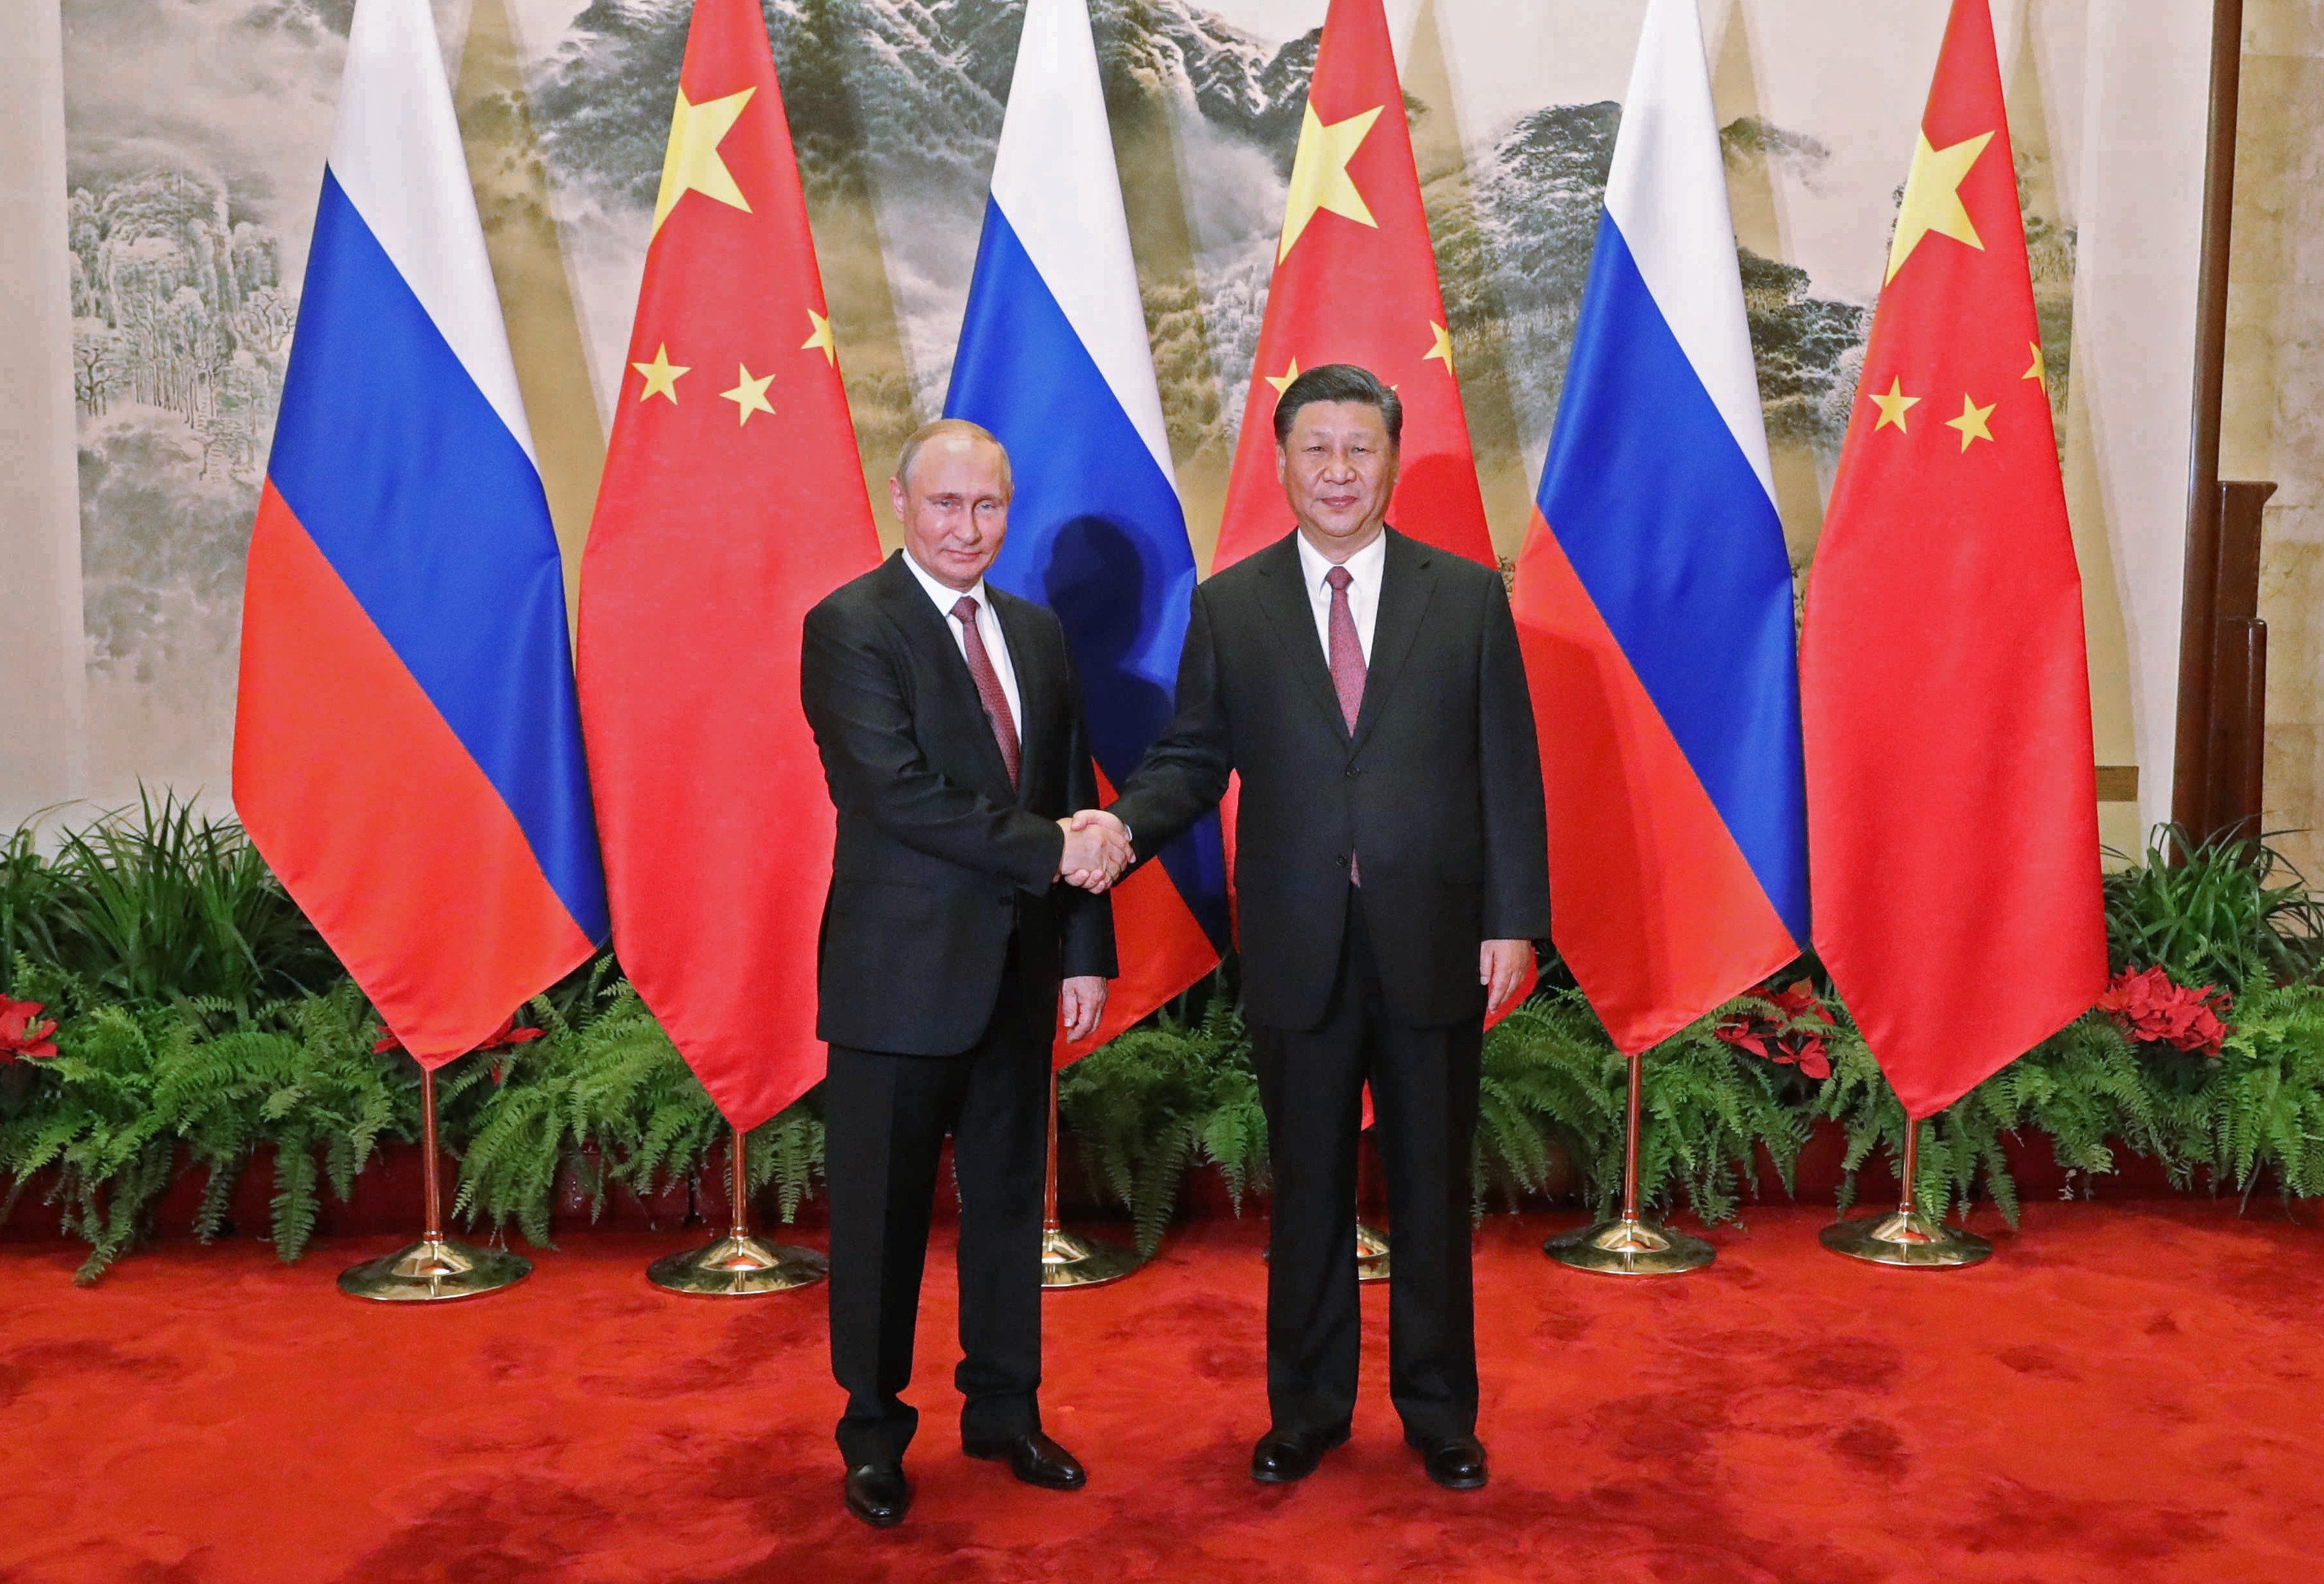 Vladimir Putin and Chinese President Xi Jinping